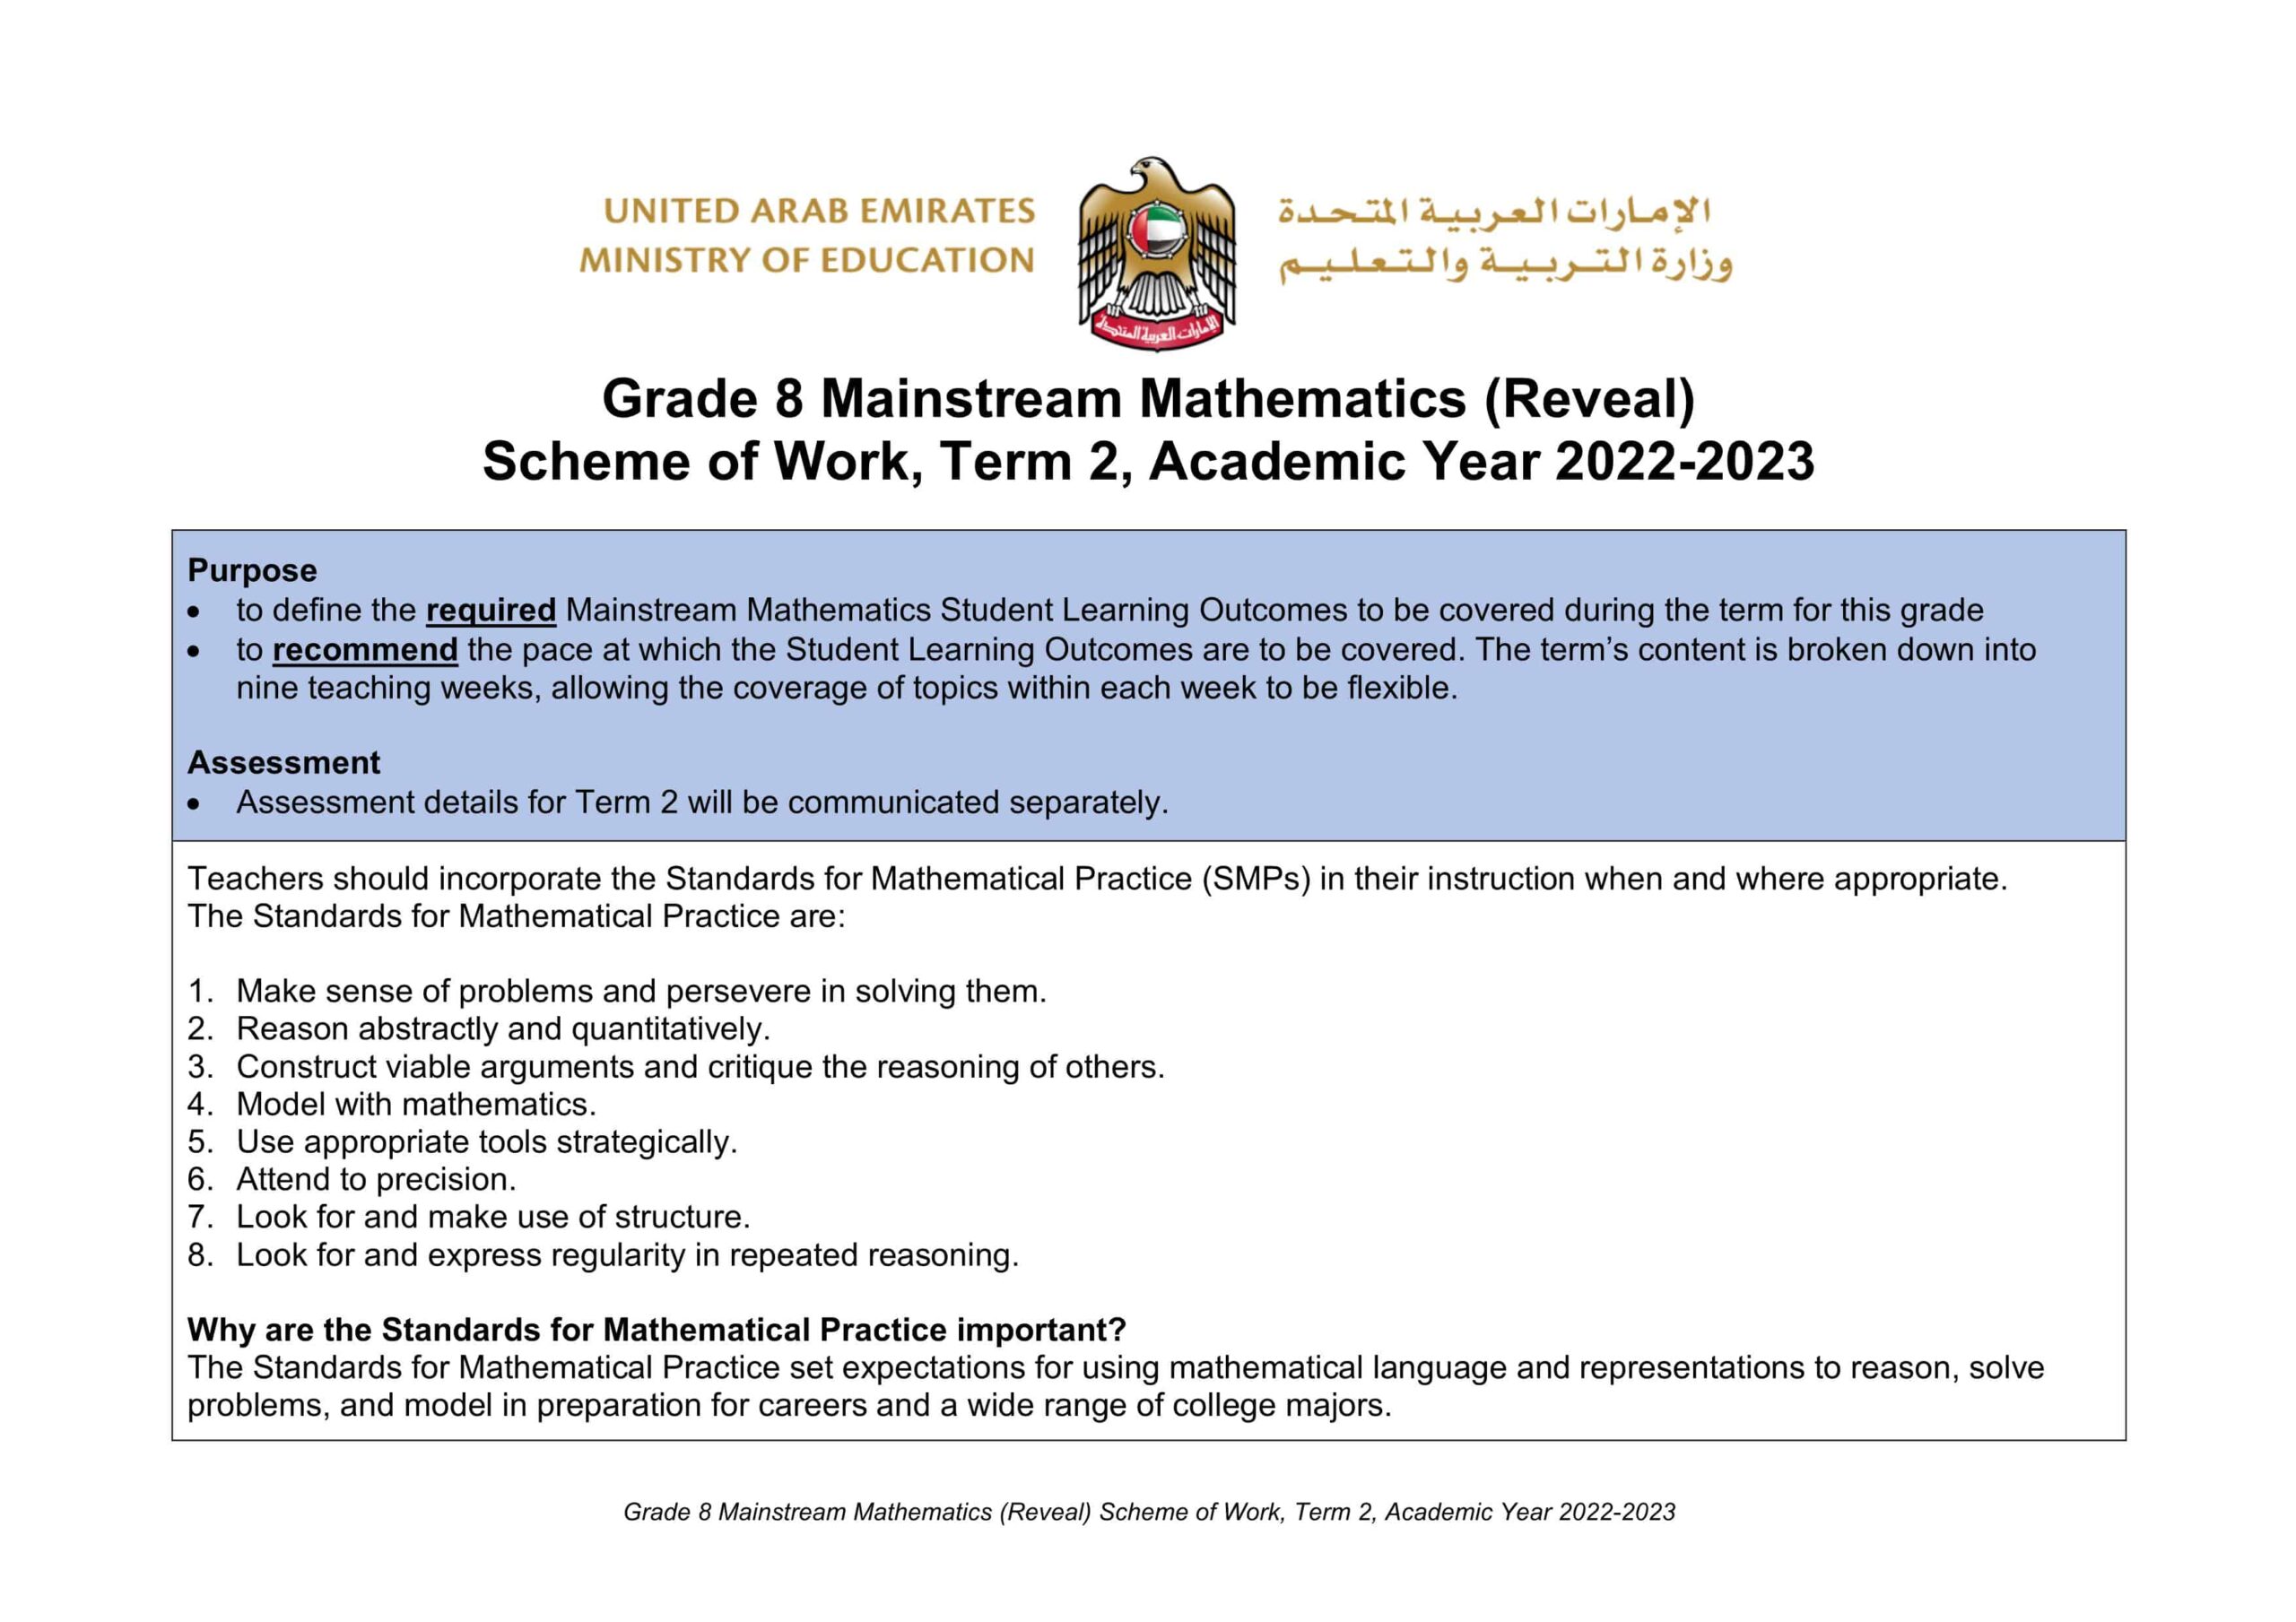 الخطة الفصلية الرياضيات المتكاملة الصف الثامن Reveal الفصل الدراسي الثاني 2022-2023